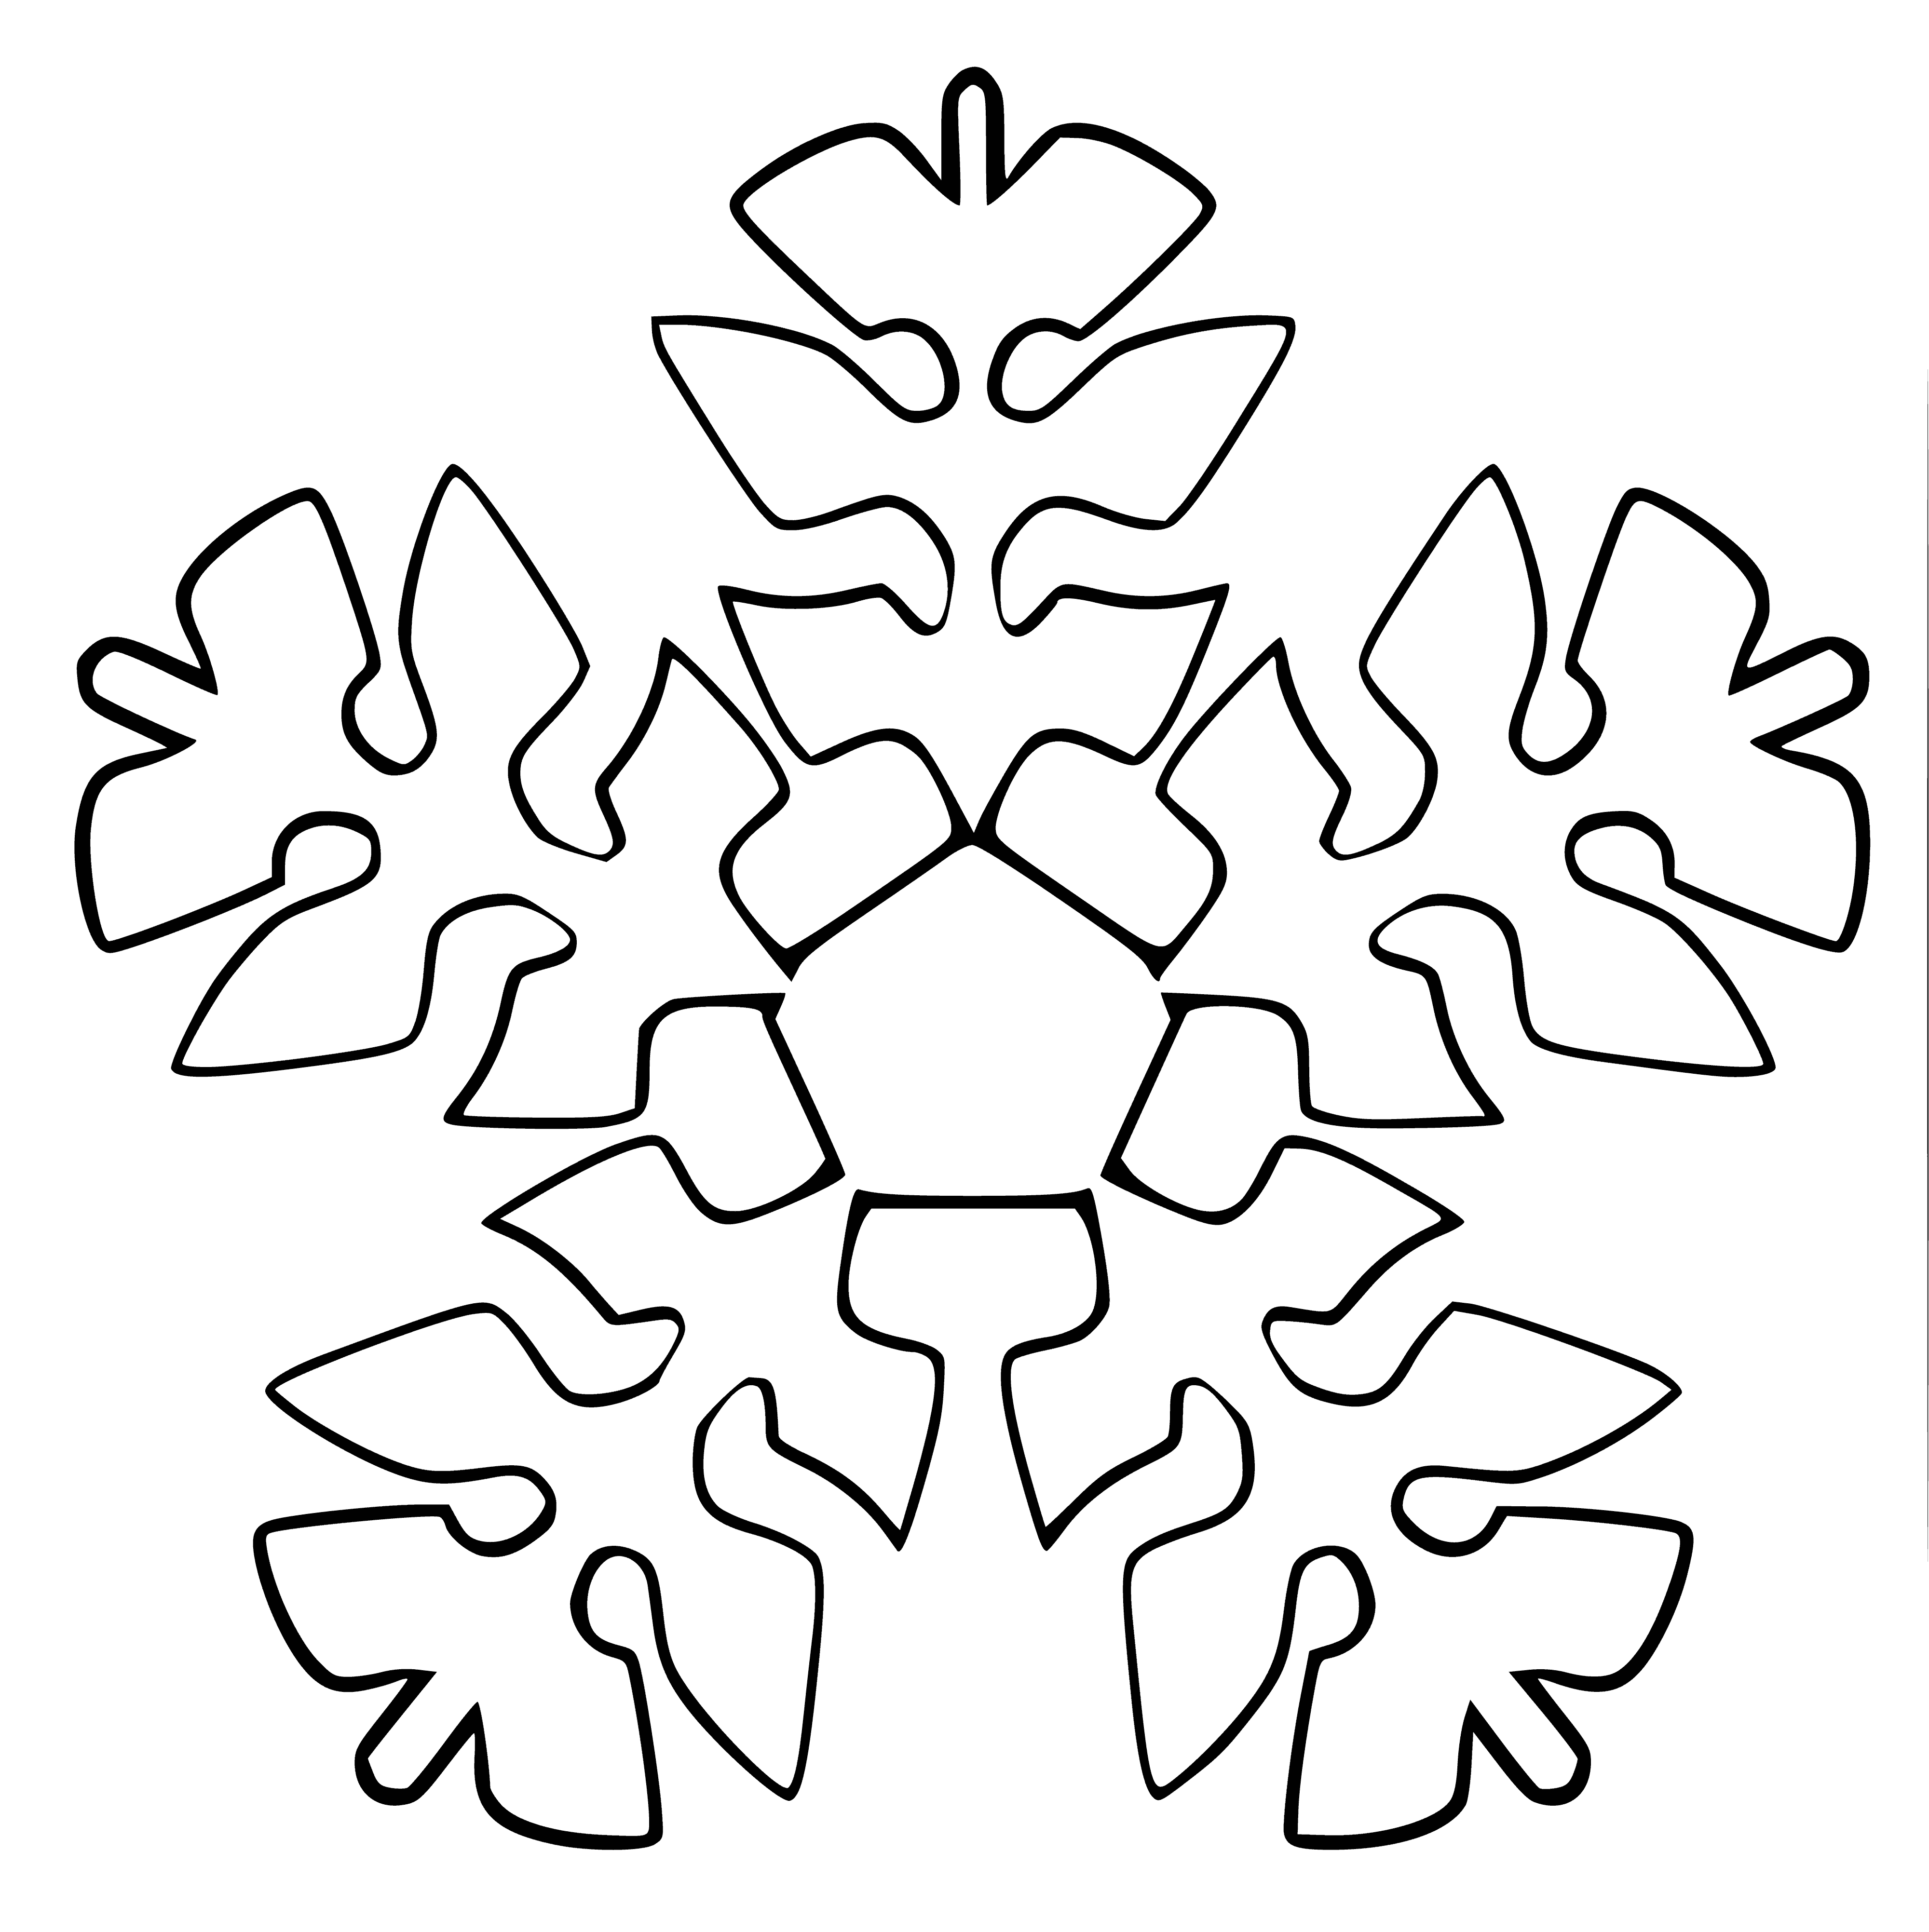 Copo de nieve página para colorear